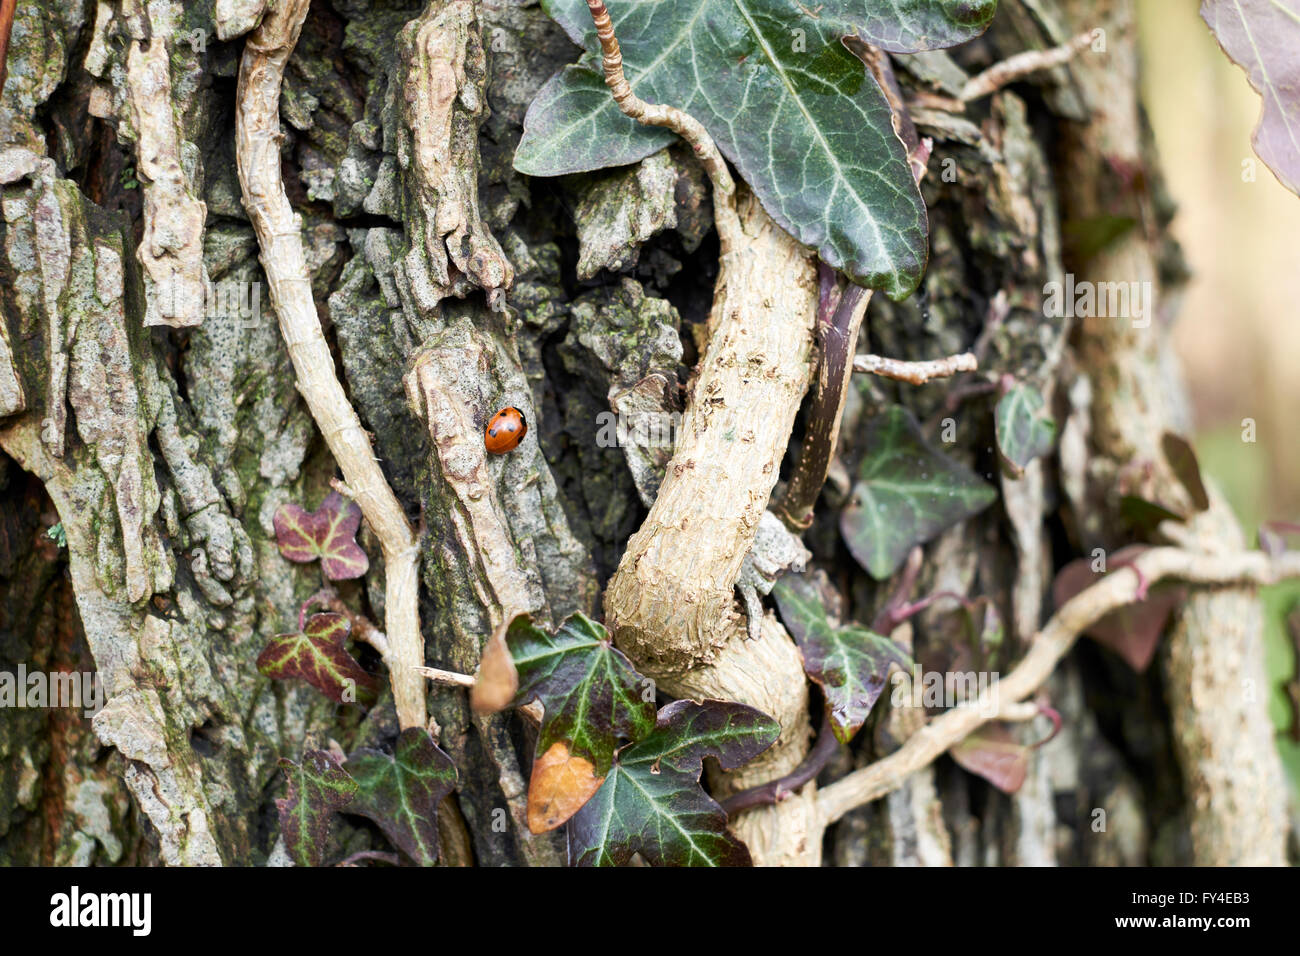 Le lierre (Hedera helix) qui poussent sur le tronc d'un arbre, avec un 7-Spot Coccinelle (Coccinella 7-punctata) Sortie d'hibernation. Banque D'Images